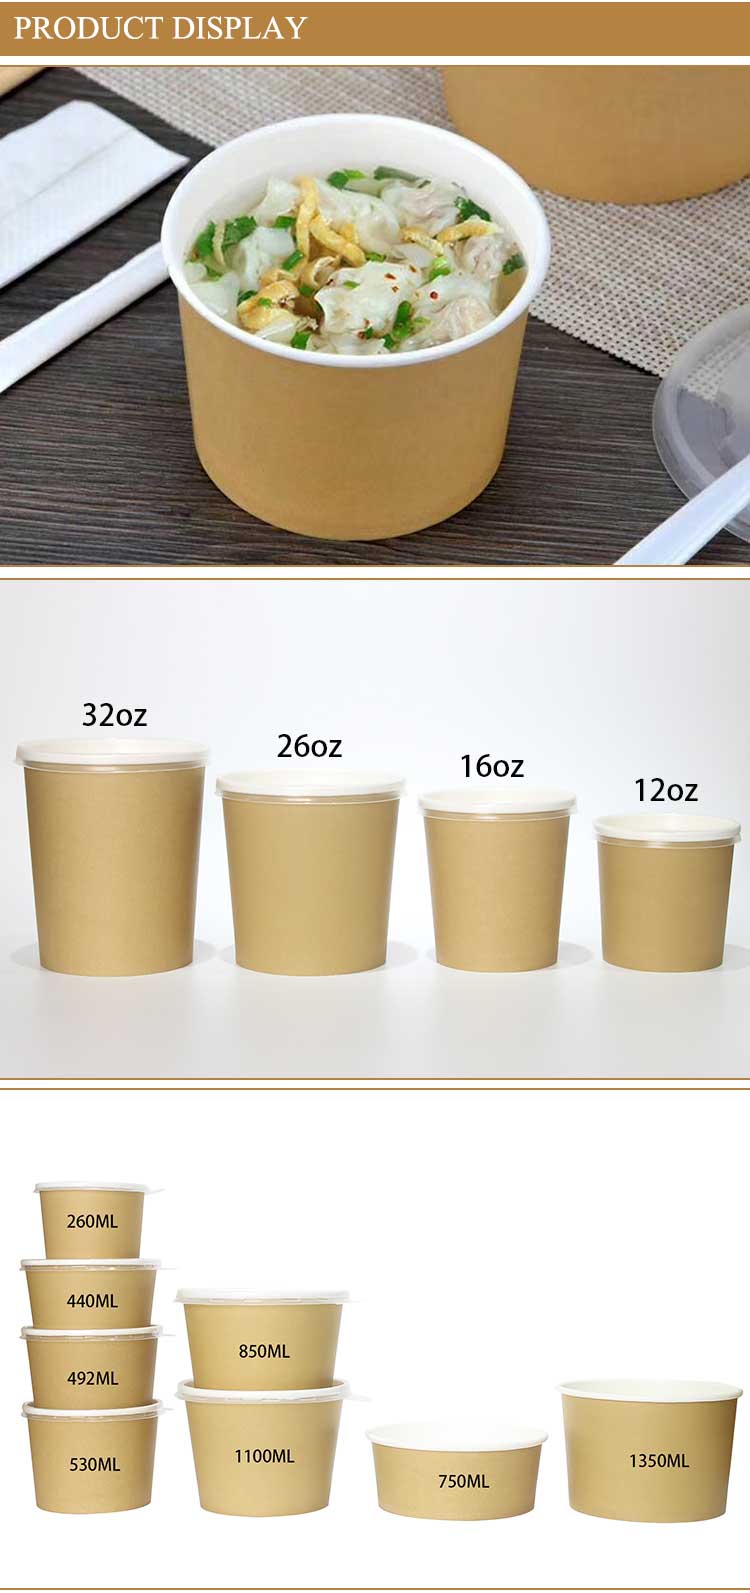 Paper disposable bowls